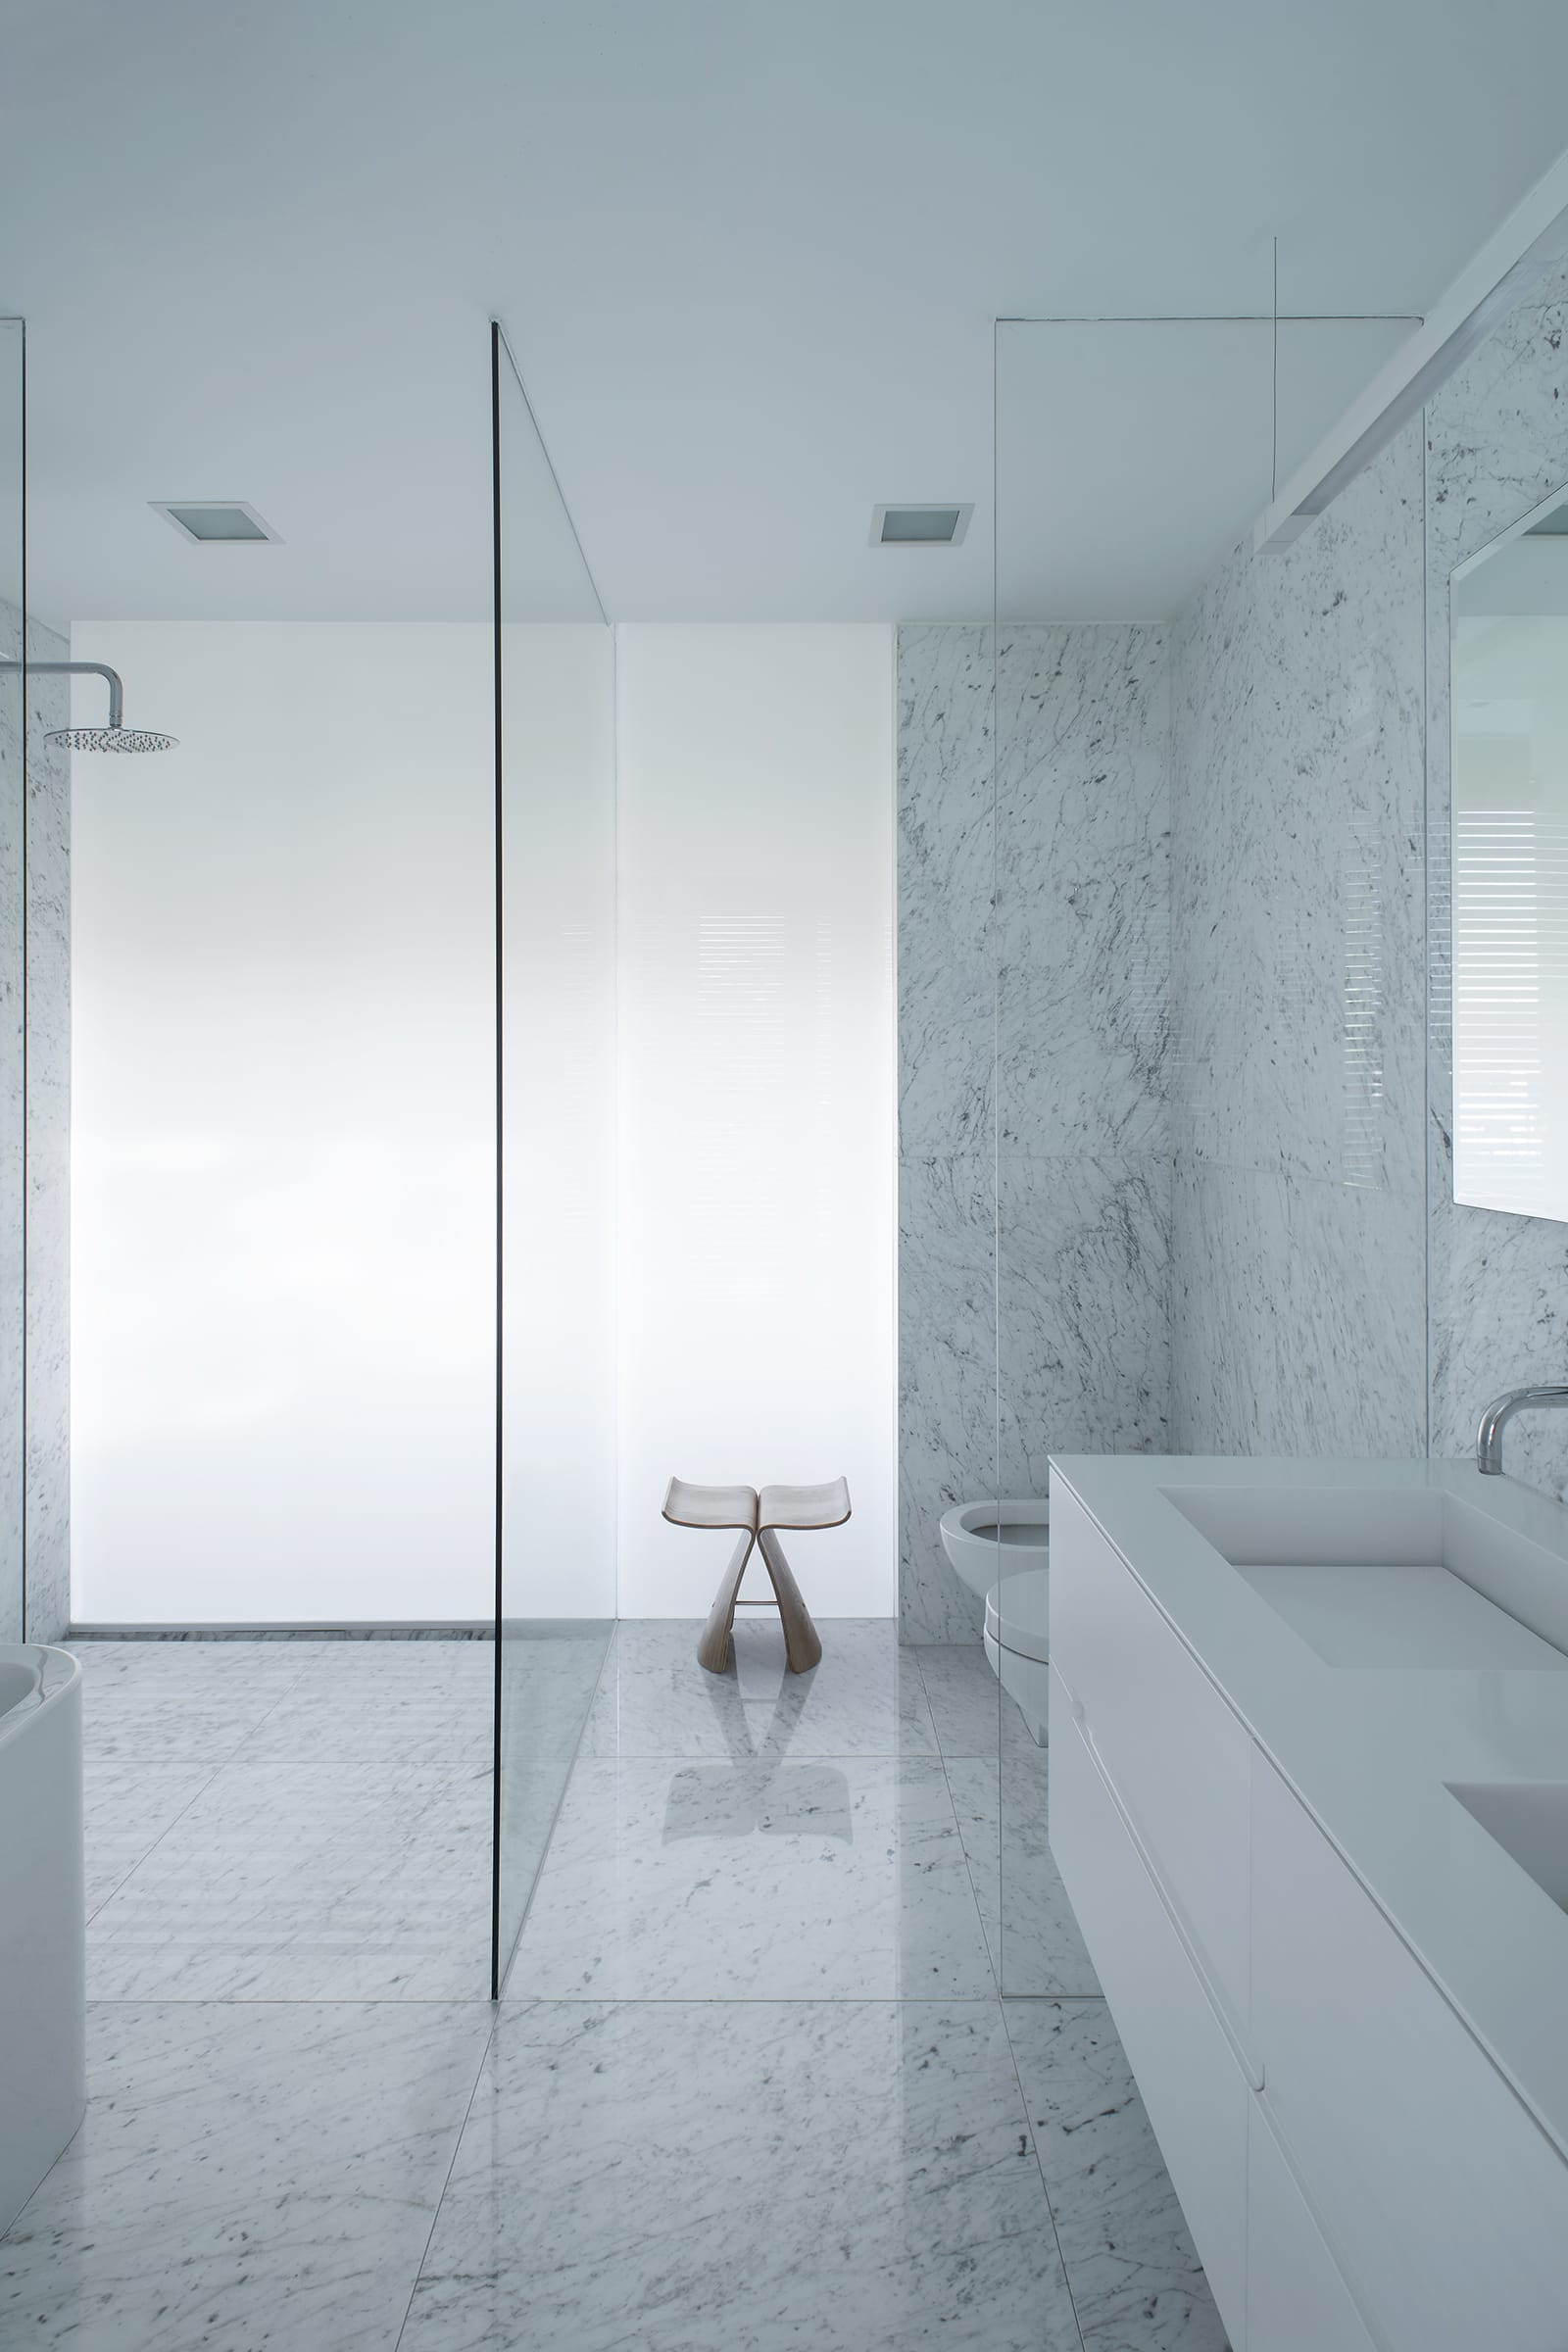 Una pared de vidrio blanco lleva luz natural difusa al interior de los baños.